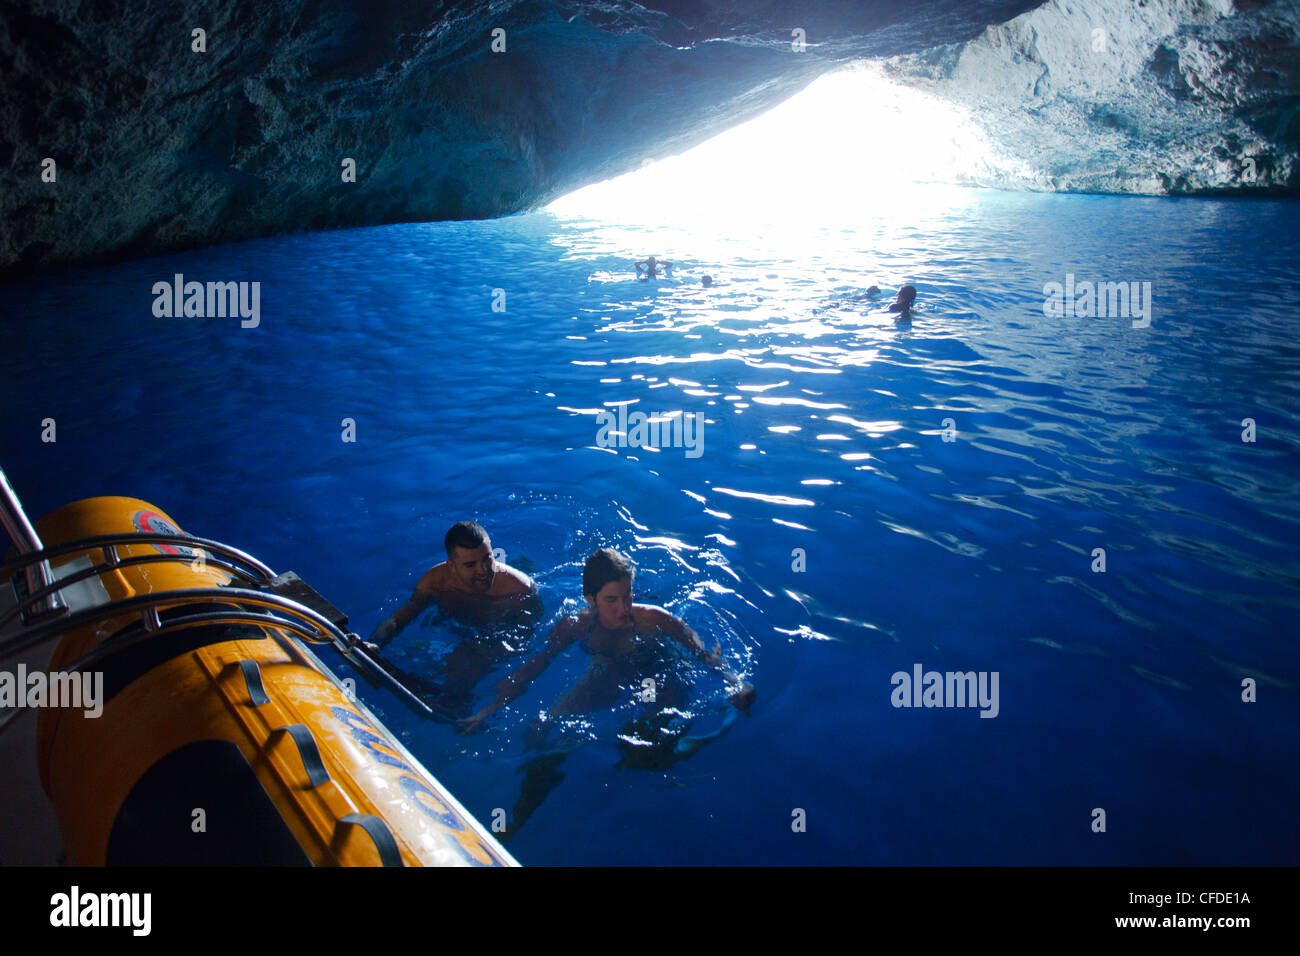 La natation de personnes dans la Grotte Bleue, l'île de Cabrera, Iles Baléares, Espagne, Europe Banque D'Images